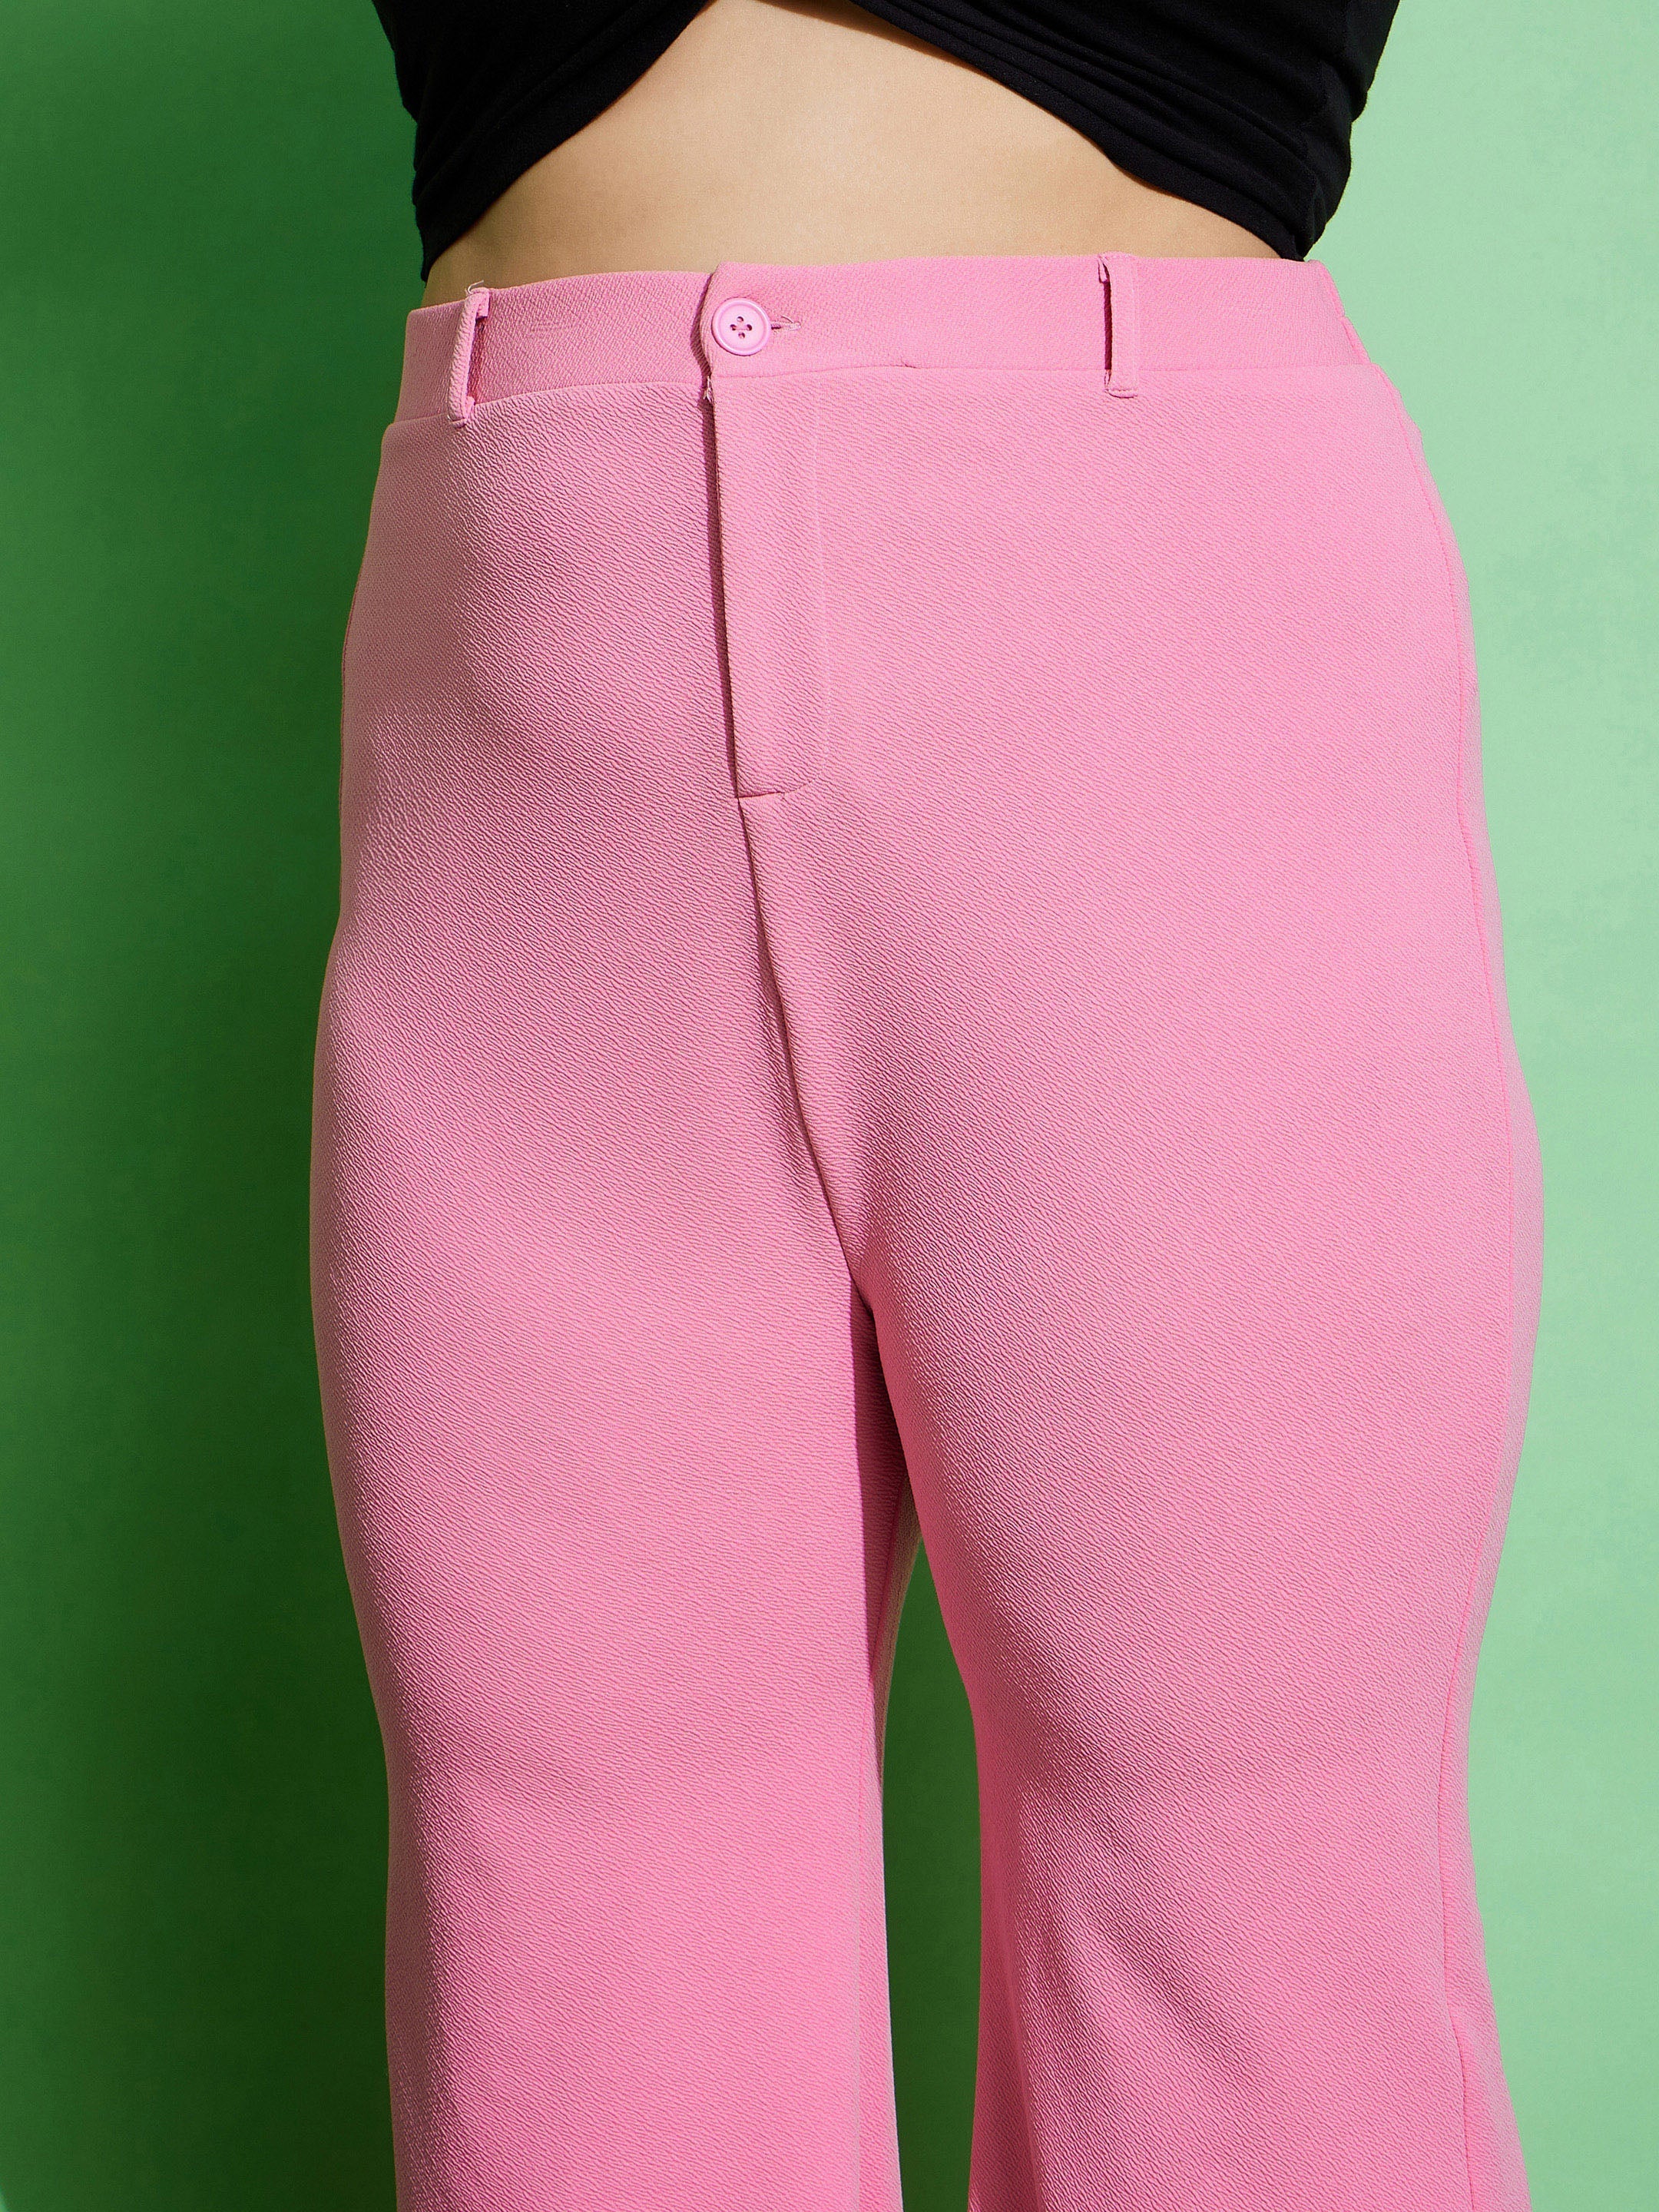 Women's Pink Front Button Bell Bottom Pants - SASSAFRAS